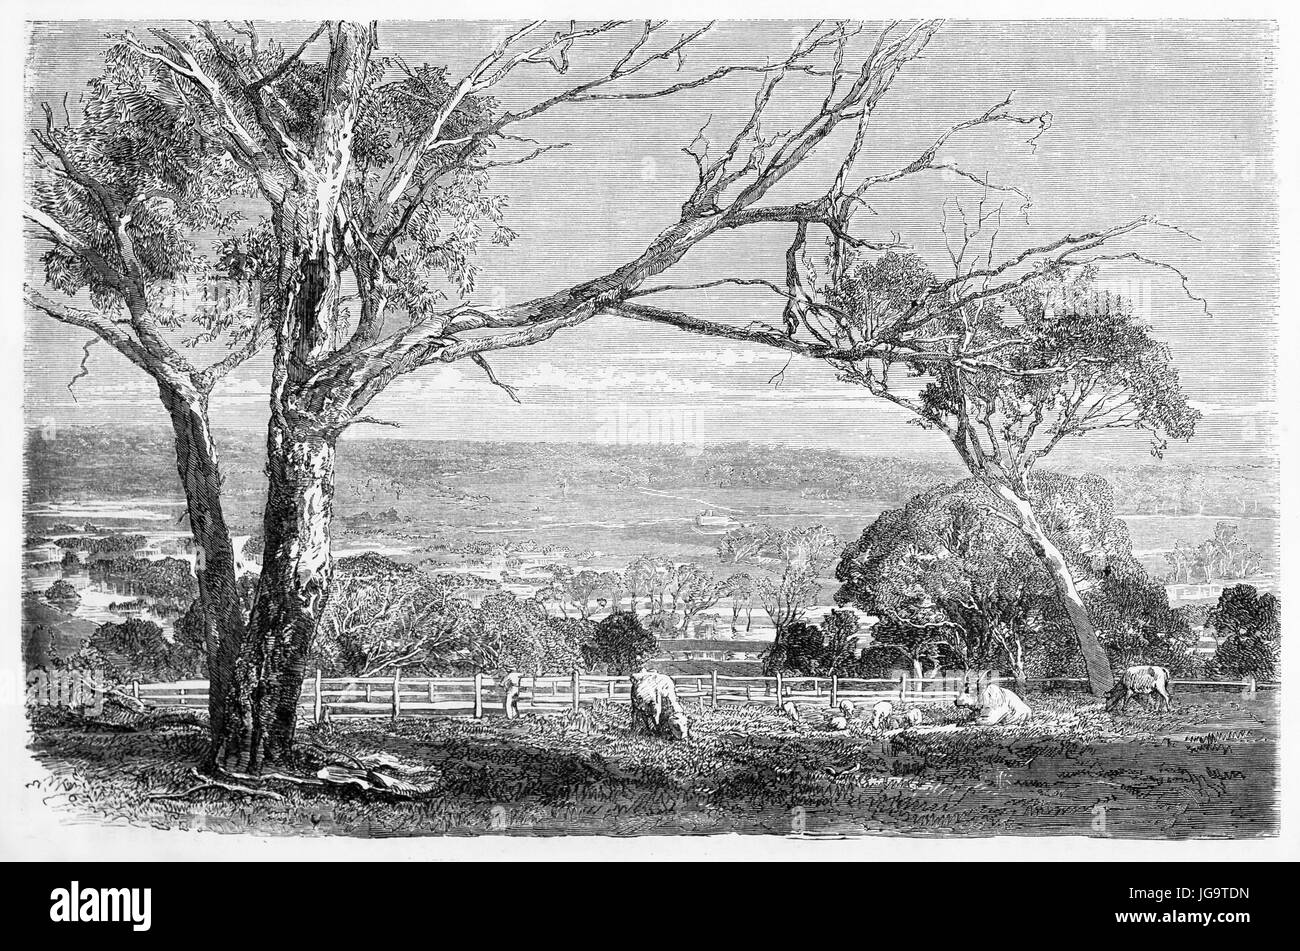 Arbres secs, vaches et clôture sur le paysage de la vallée de Yarra, en Australie. Gravure de tons gris anciens par Francais, publiée le Tour du monde 1861 Banque D'Images